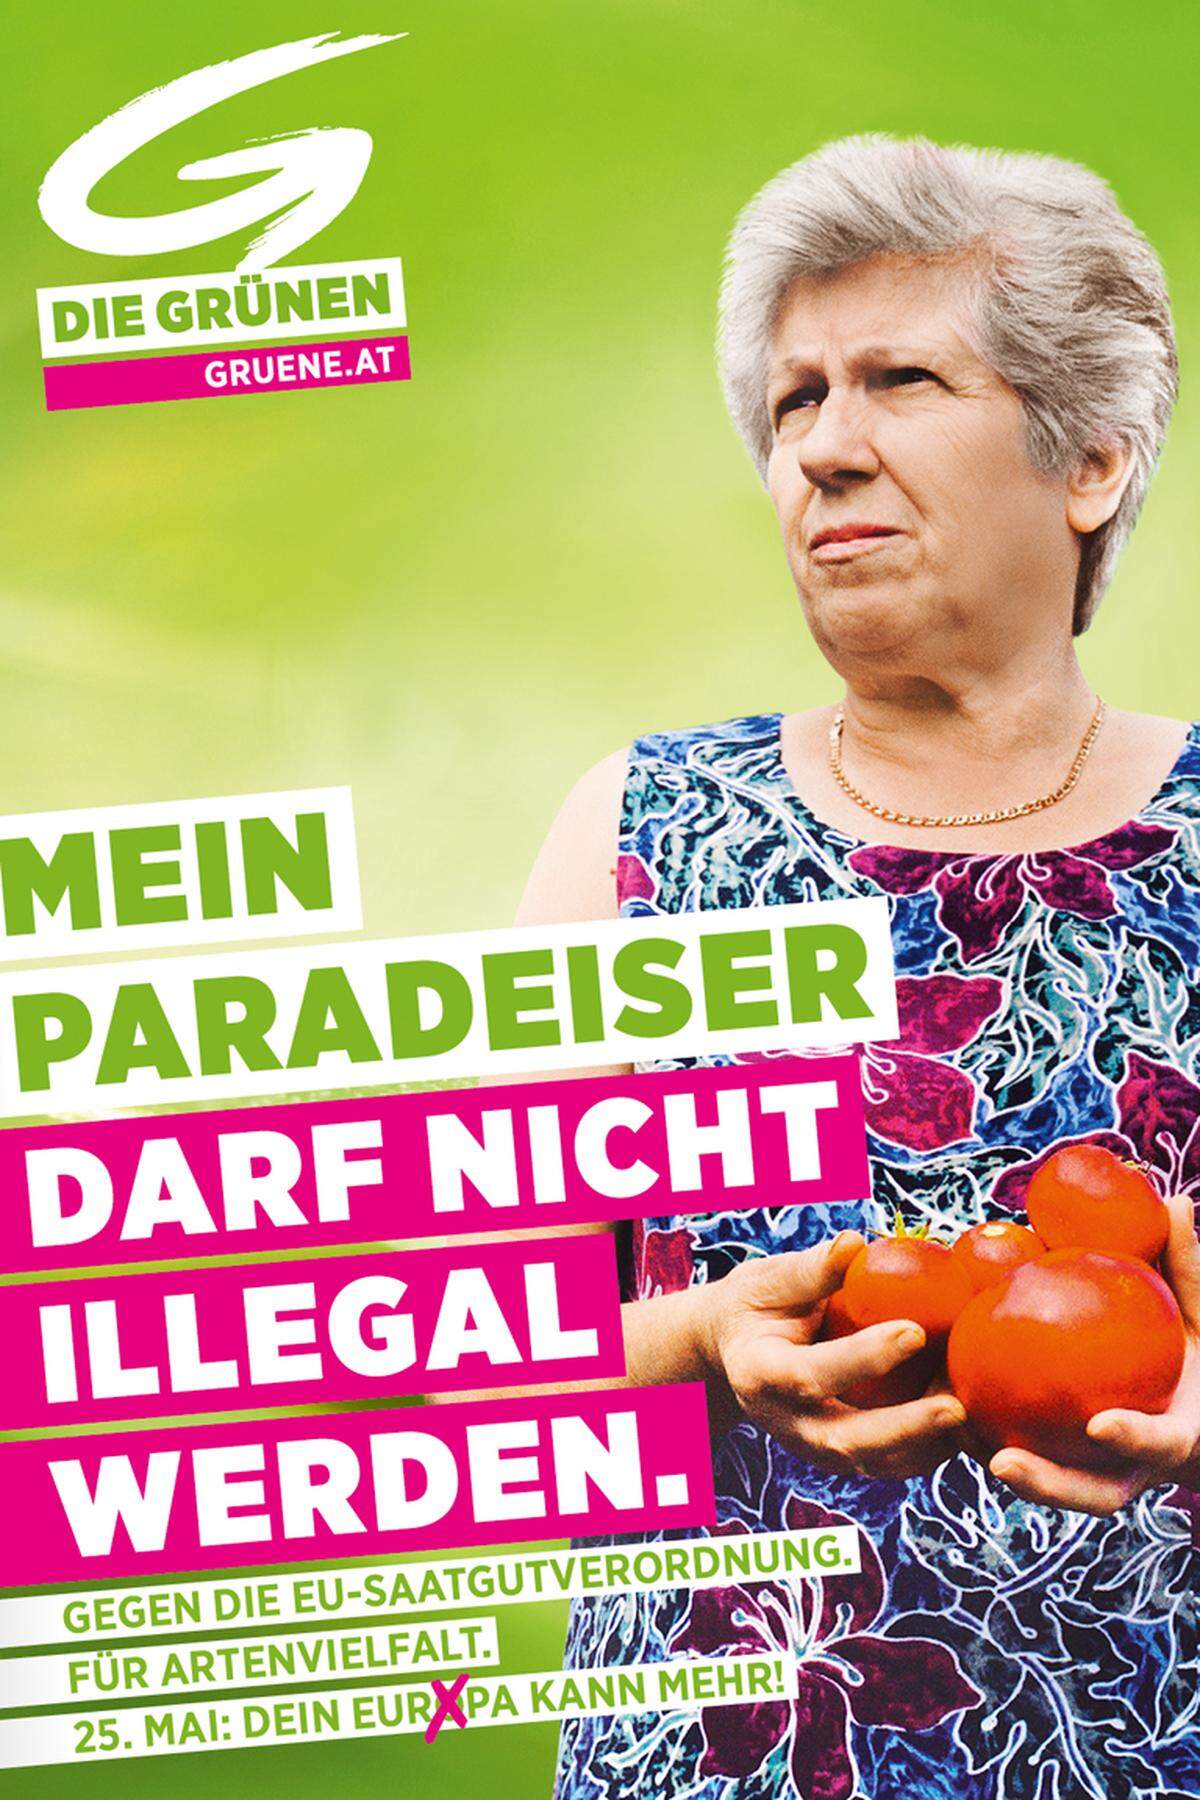 "Mein Paradeiser darf nicht illegal werden", lautet indes ein Slogan der ersten grünen Plakatwelle. Das Wort "Paradeiser" ist aber nur in der Steiermark, in Wien, Niederösterreich und dem Burgenland zu lesen. Im Westen geht es, den lokalen Sprachgepflogenheiten geschuldet, um die "Tomate". Hintergrund der Kampagne - die abseits des grün-pink-weißen Schriftzuges eine äußert mürrisch blickende ältere Frau mit den roten Früchten in Händen ziert - ist die Debatte um Saatgut. Das heimische Gemüse dürfe nicht verboten werden, so die Grünen.